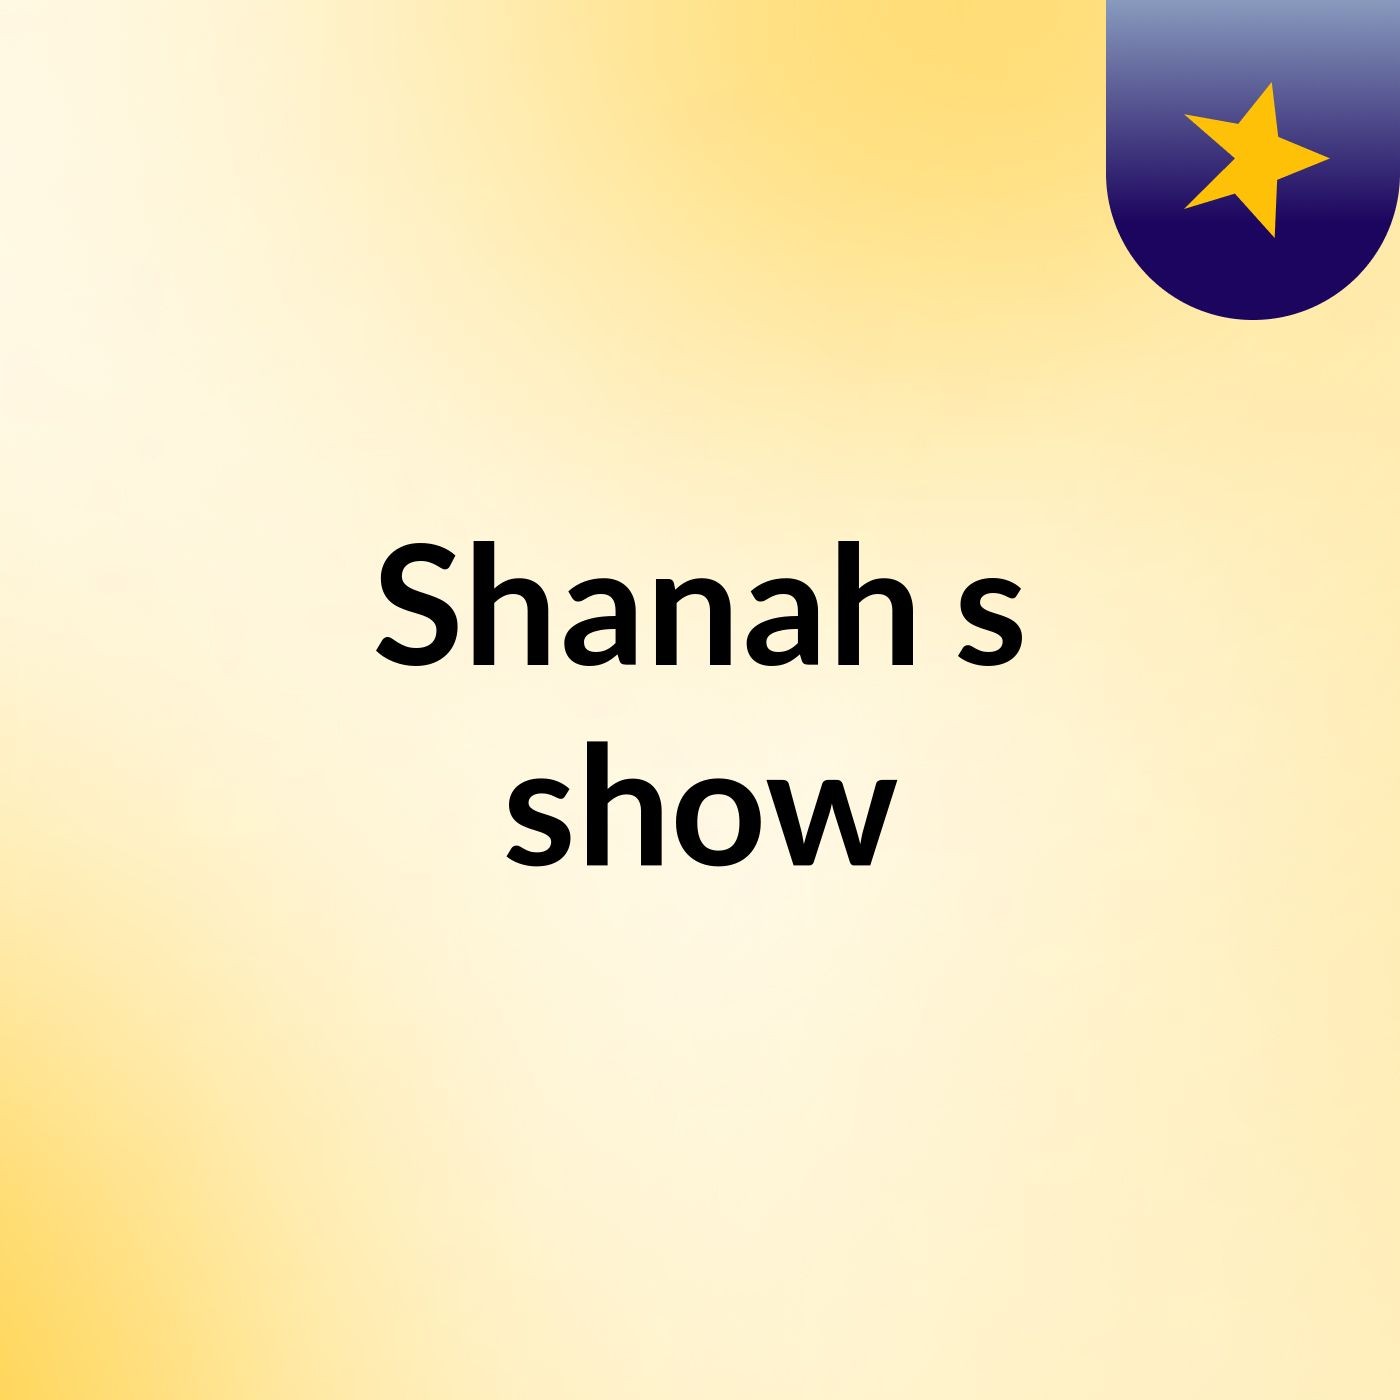 Shanah's show